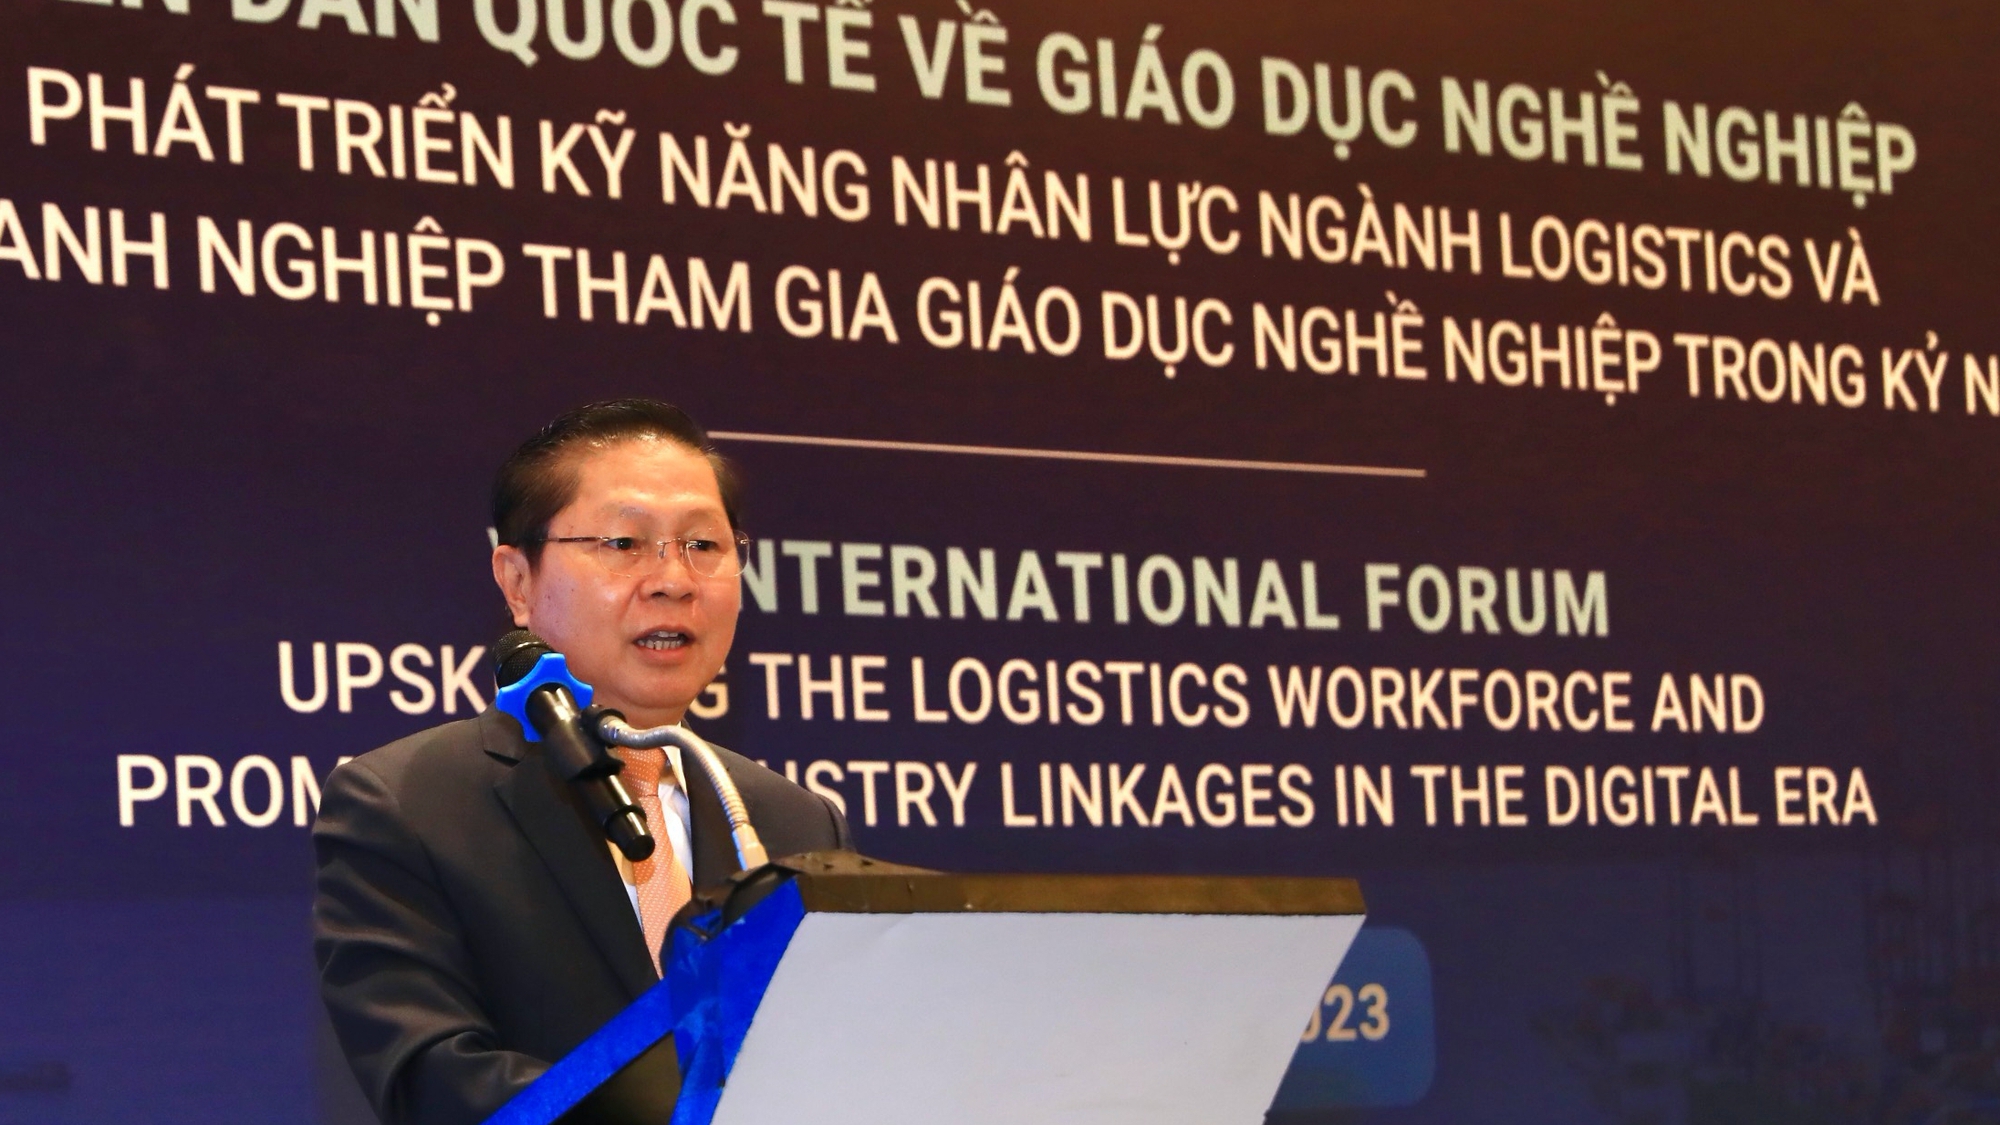 Úc giúp Việt Nam nâng cao chất lượng đào tạo nhân lực ngành logistics - Ảnh 1.